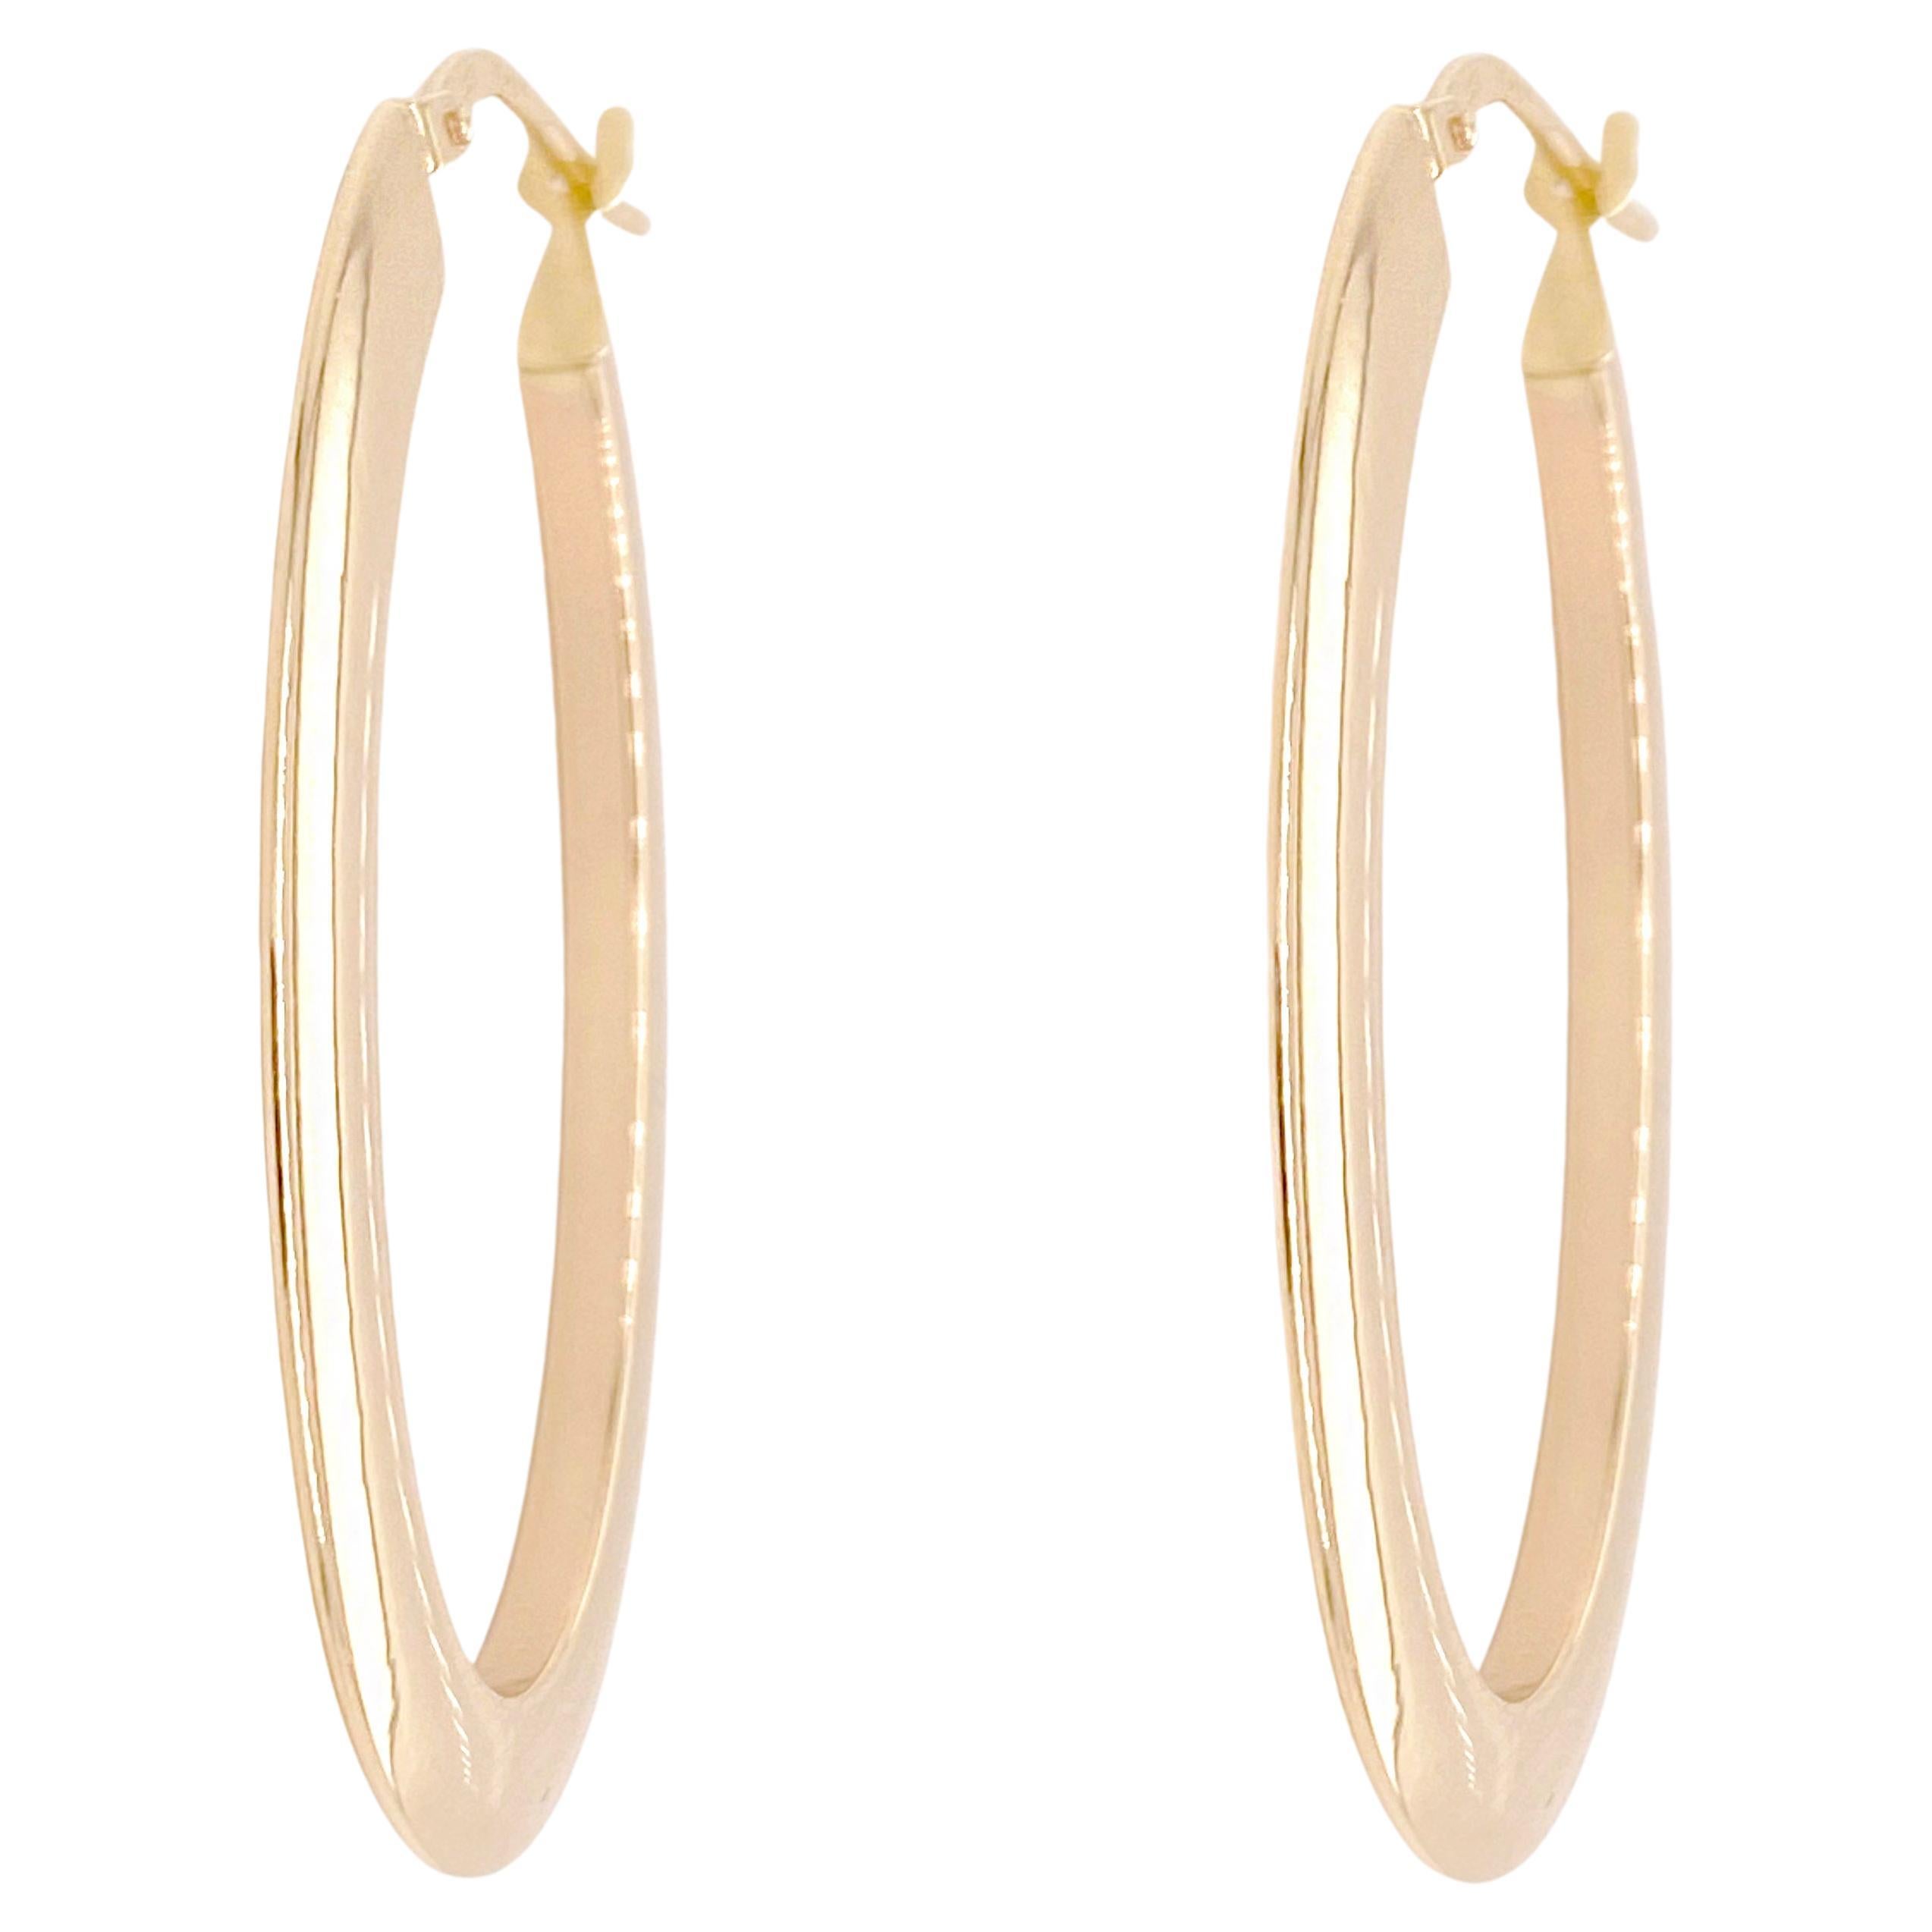 1.5-inch Oval Hoops, 40 x 25 mm Oval Earrings, Lightweight 14K Yellow Gold